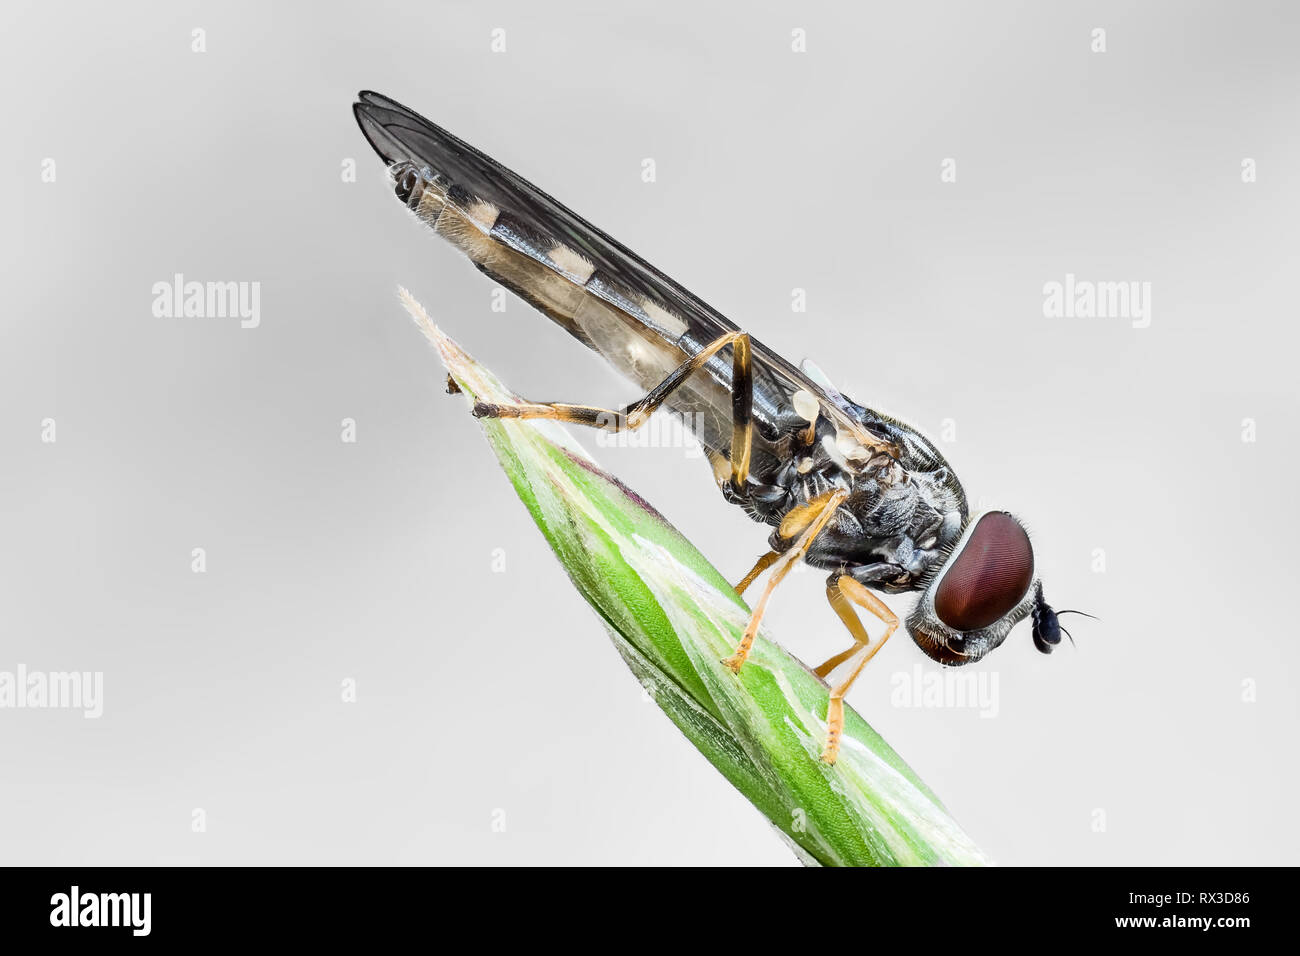 Insekten Makro, Nahaufnahme mit vielen Details mit Hilfe von Focus Bracketing. Detailreiche Makroaufnahmen von kleinen Tieren Stock Photo